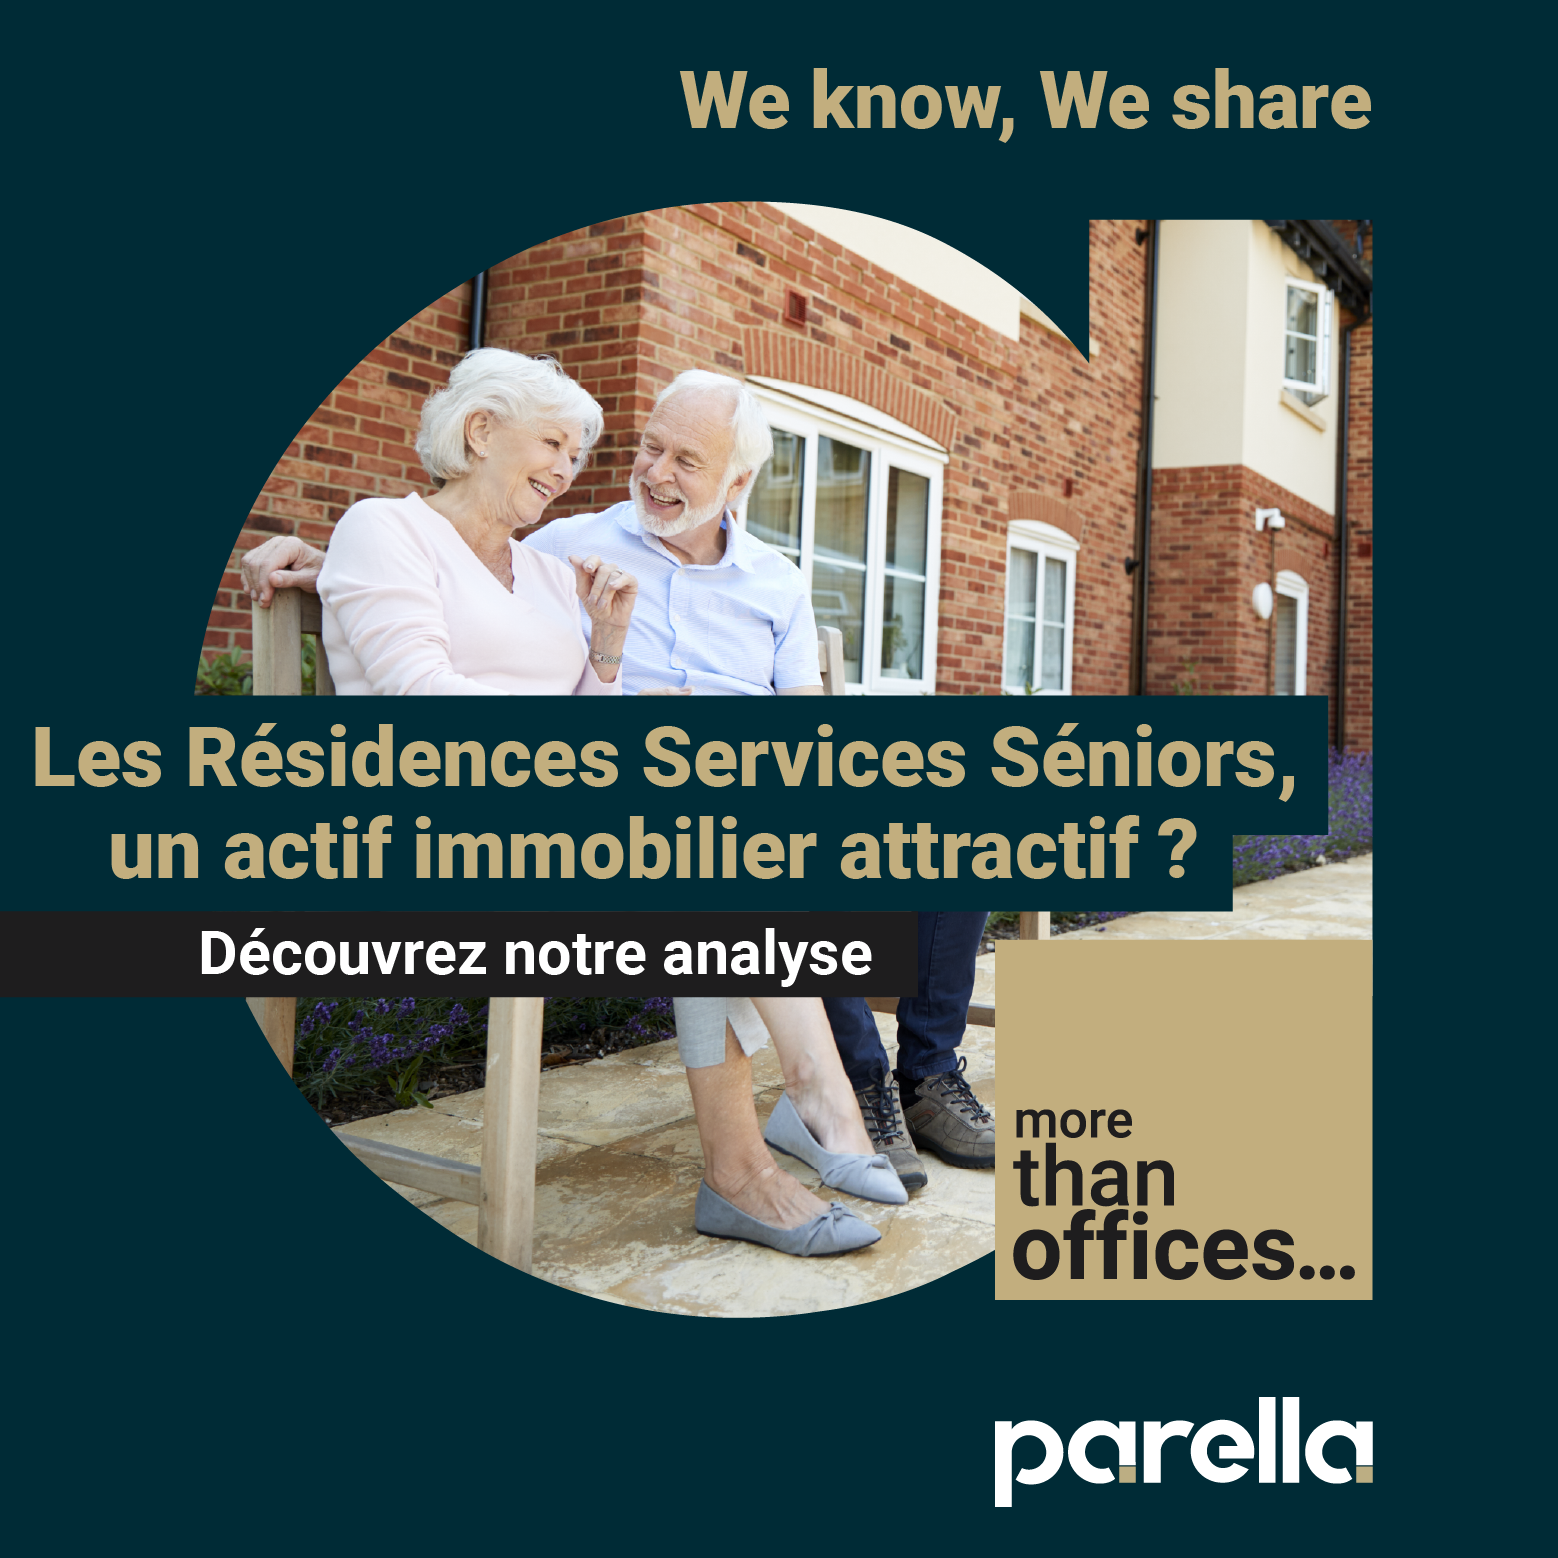 Les Résidences Services Séniors, un actif immobilier attractif ?